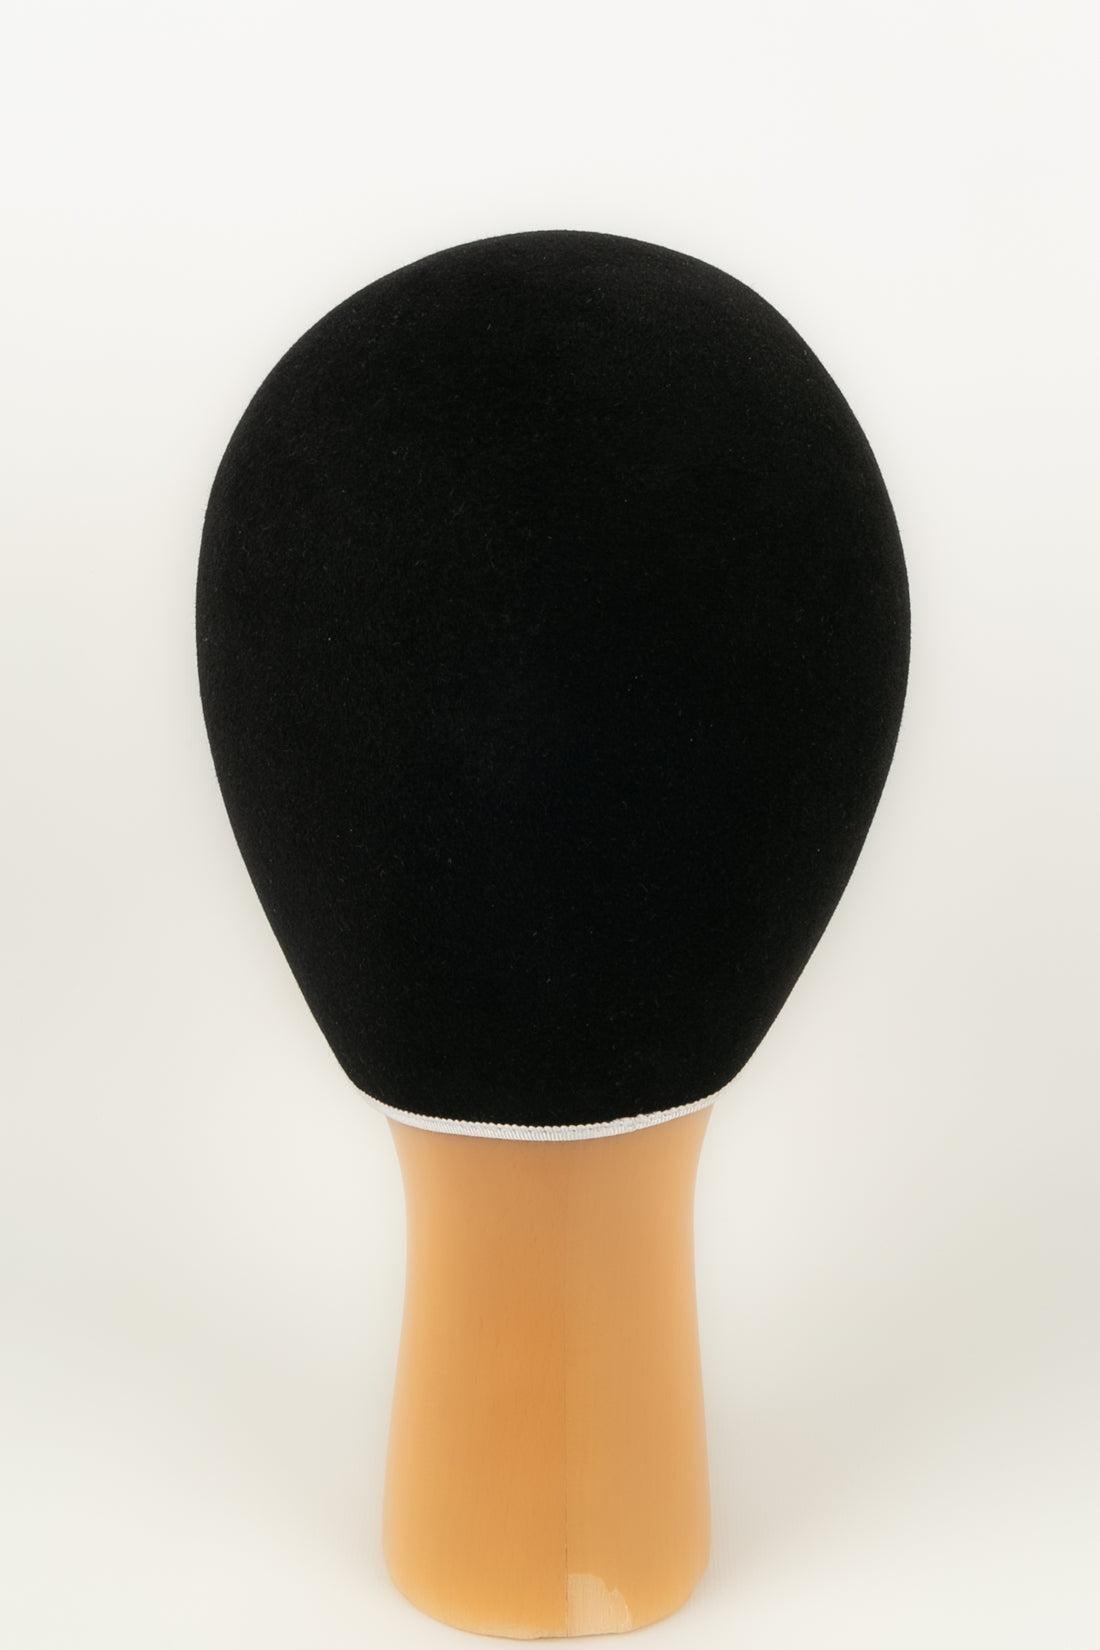 Gray Kris Van Assche Hat in Black and White